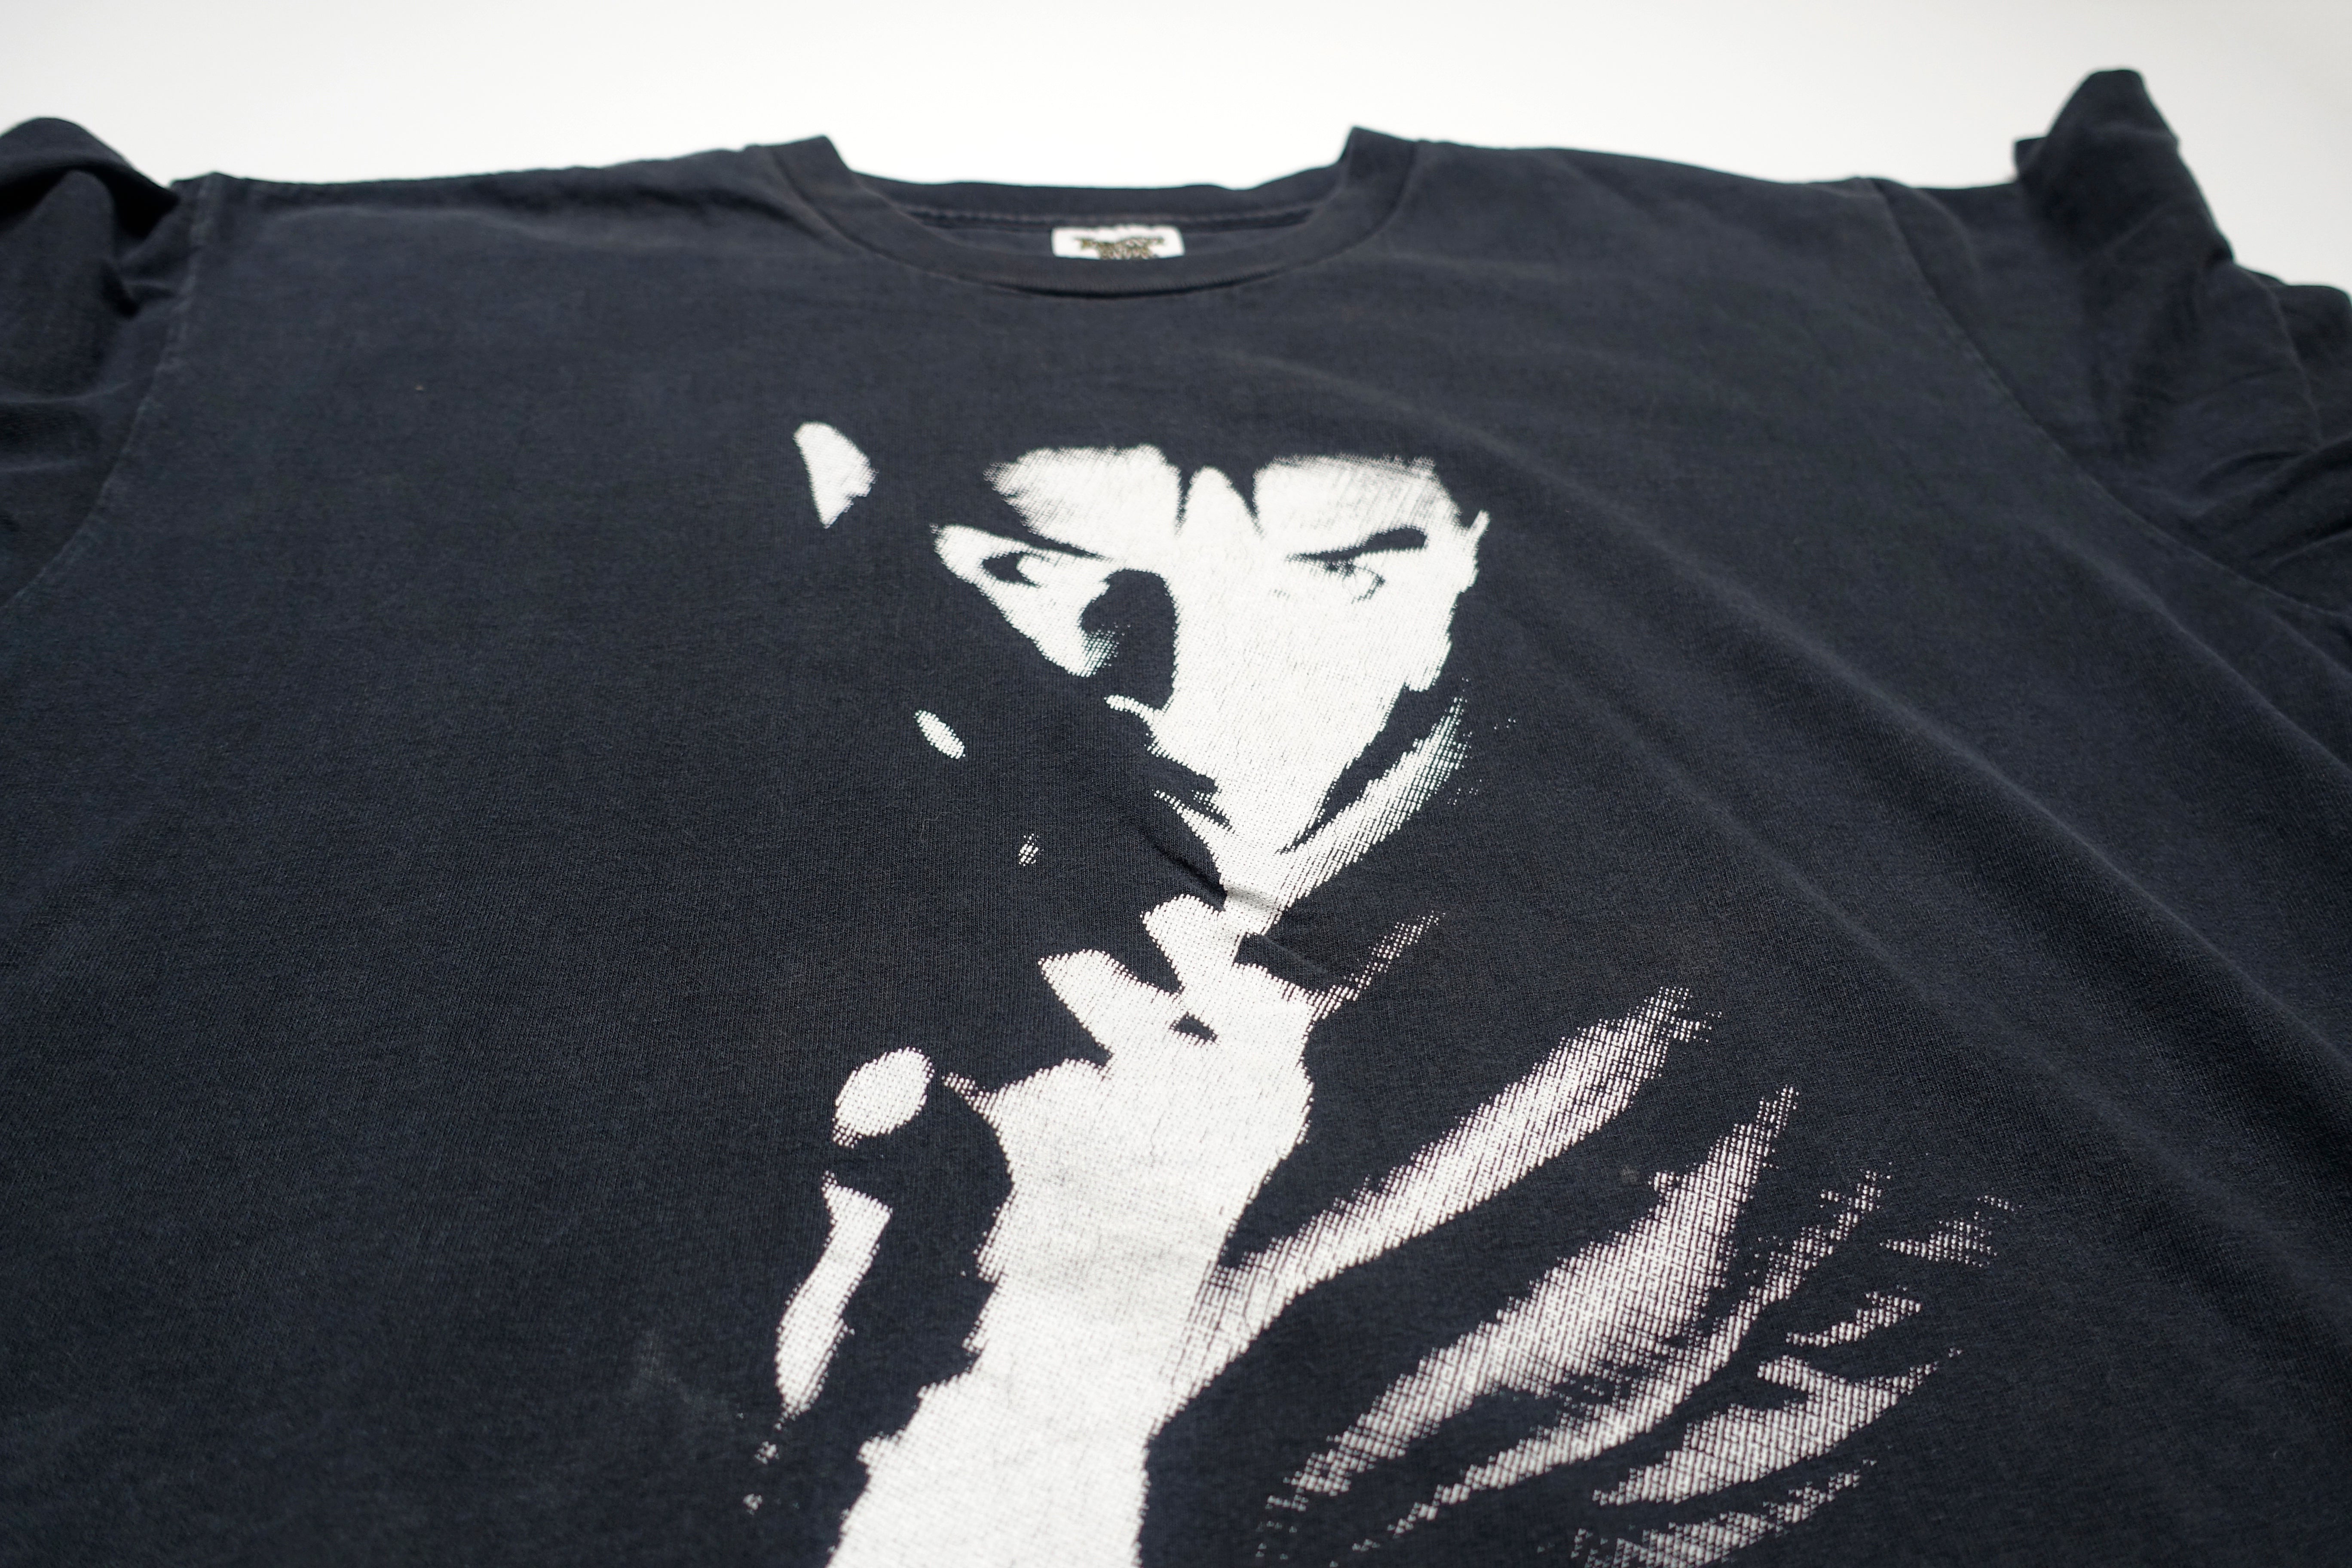 Bauhaus - Peter Murphy Live 90's Tour Shirt Size XL